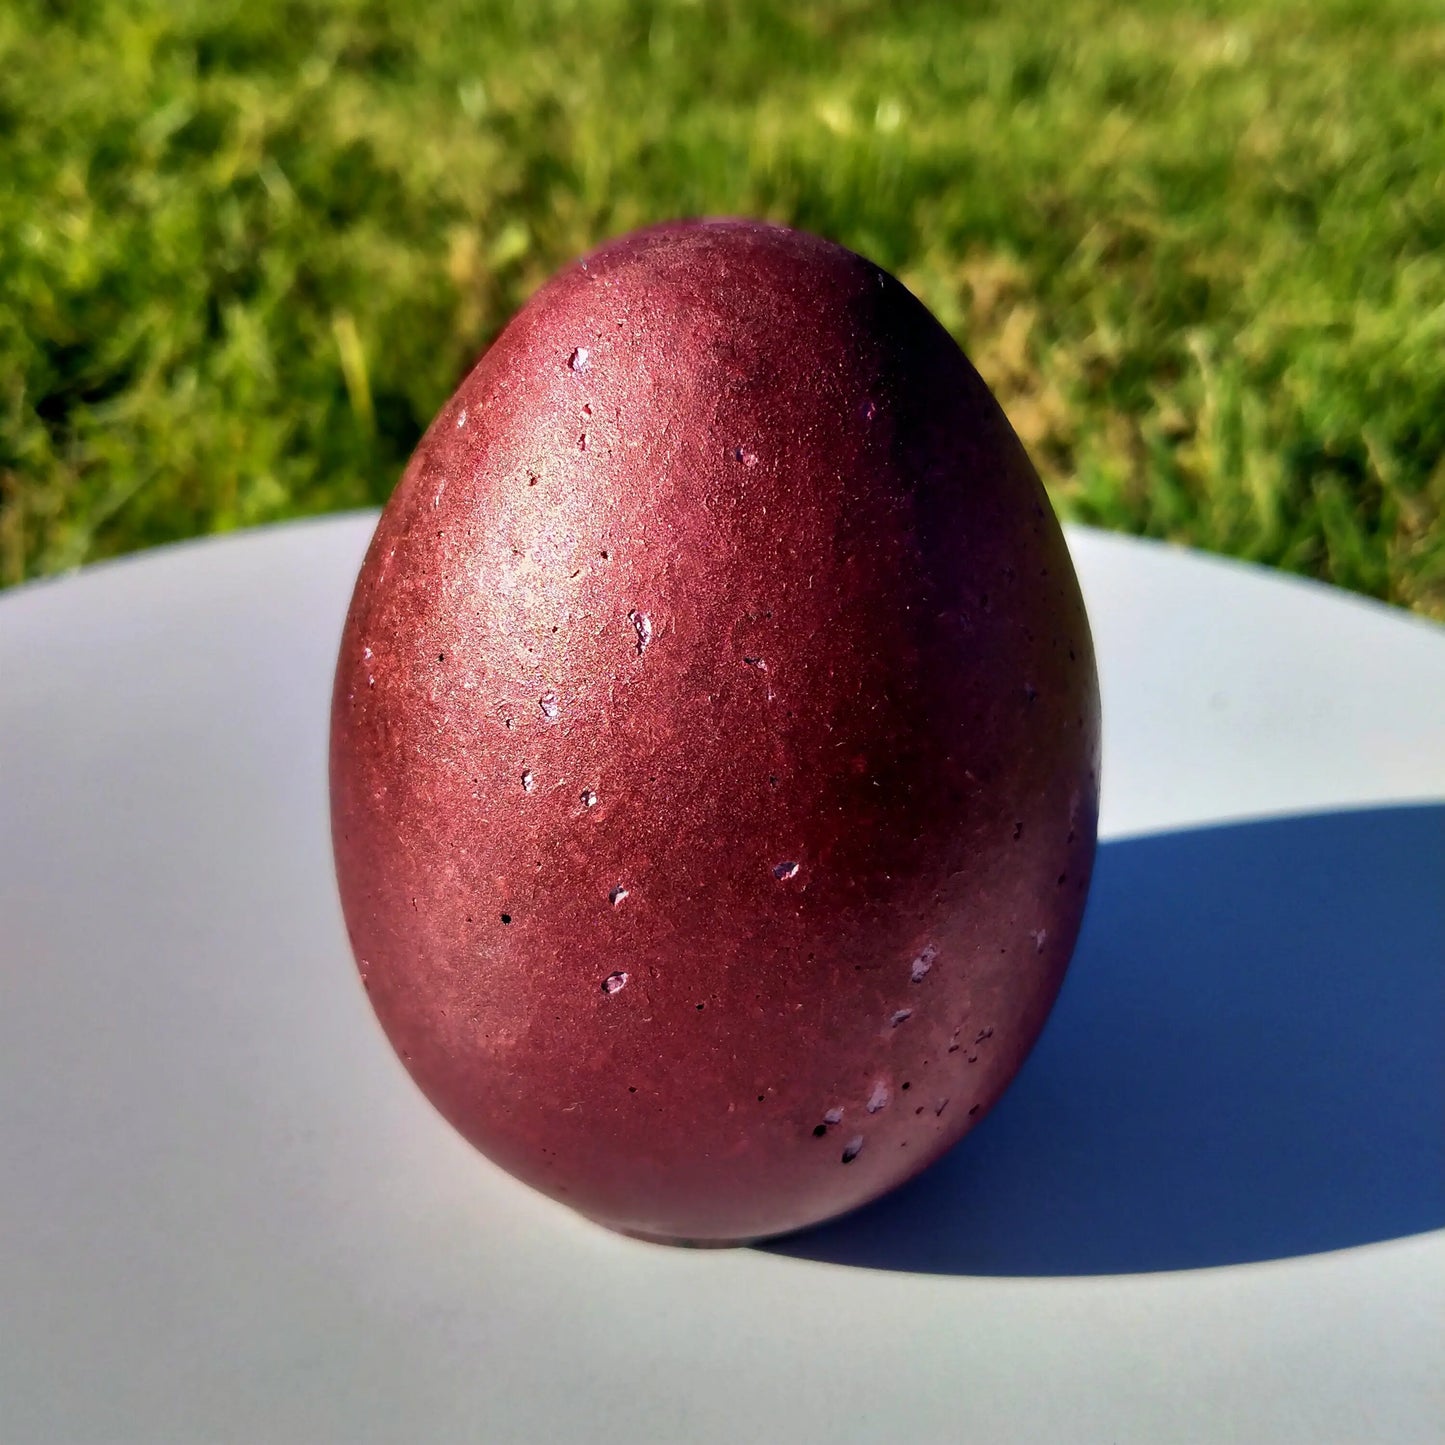 Huevo Orgonita Rojo con Shunguita - mundoorgon